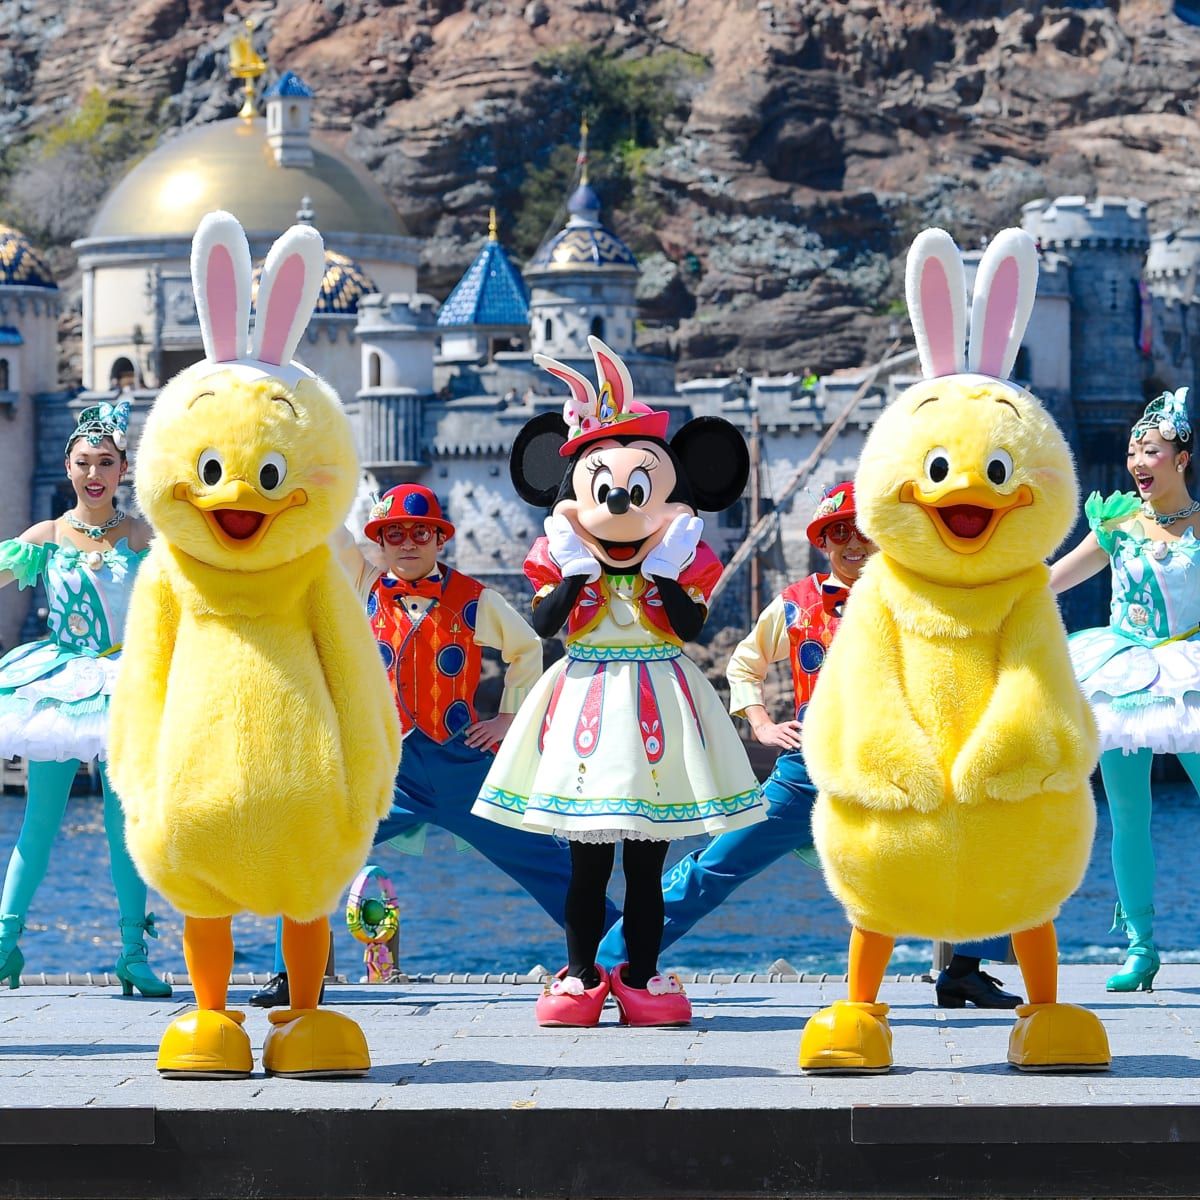 Dtimes V Twitter 東京ディズニーシー ハーバーグリーティング 明日5月12日から6月30日の期間 春の装いのミッキーたちとうさピヨが登場する特別バージョンの公演となることが発表されました T Co Tykclur85c